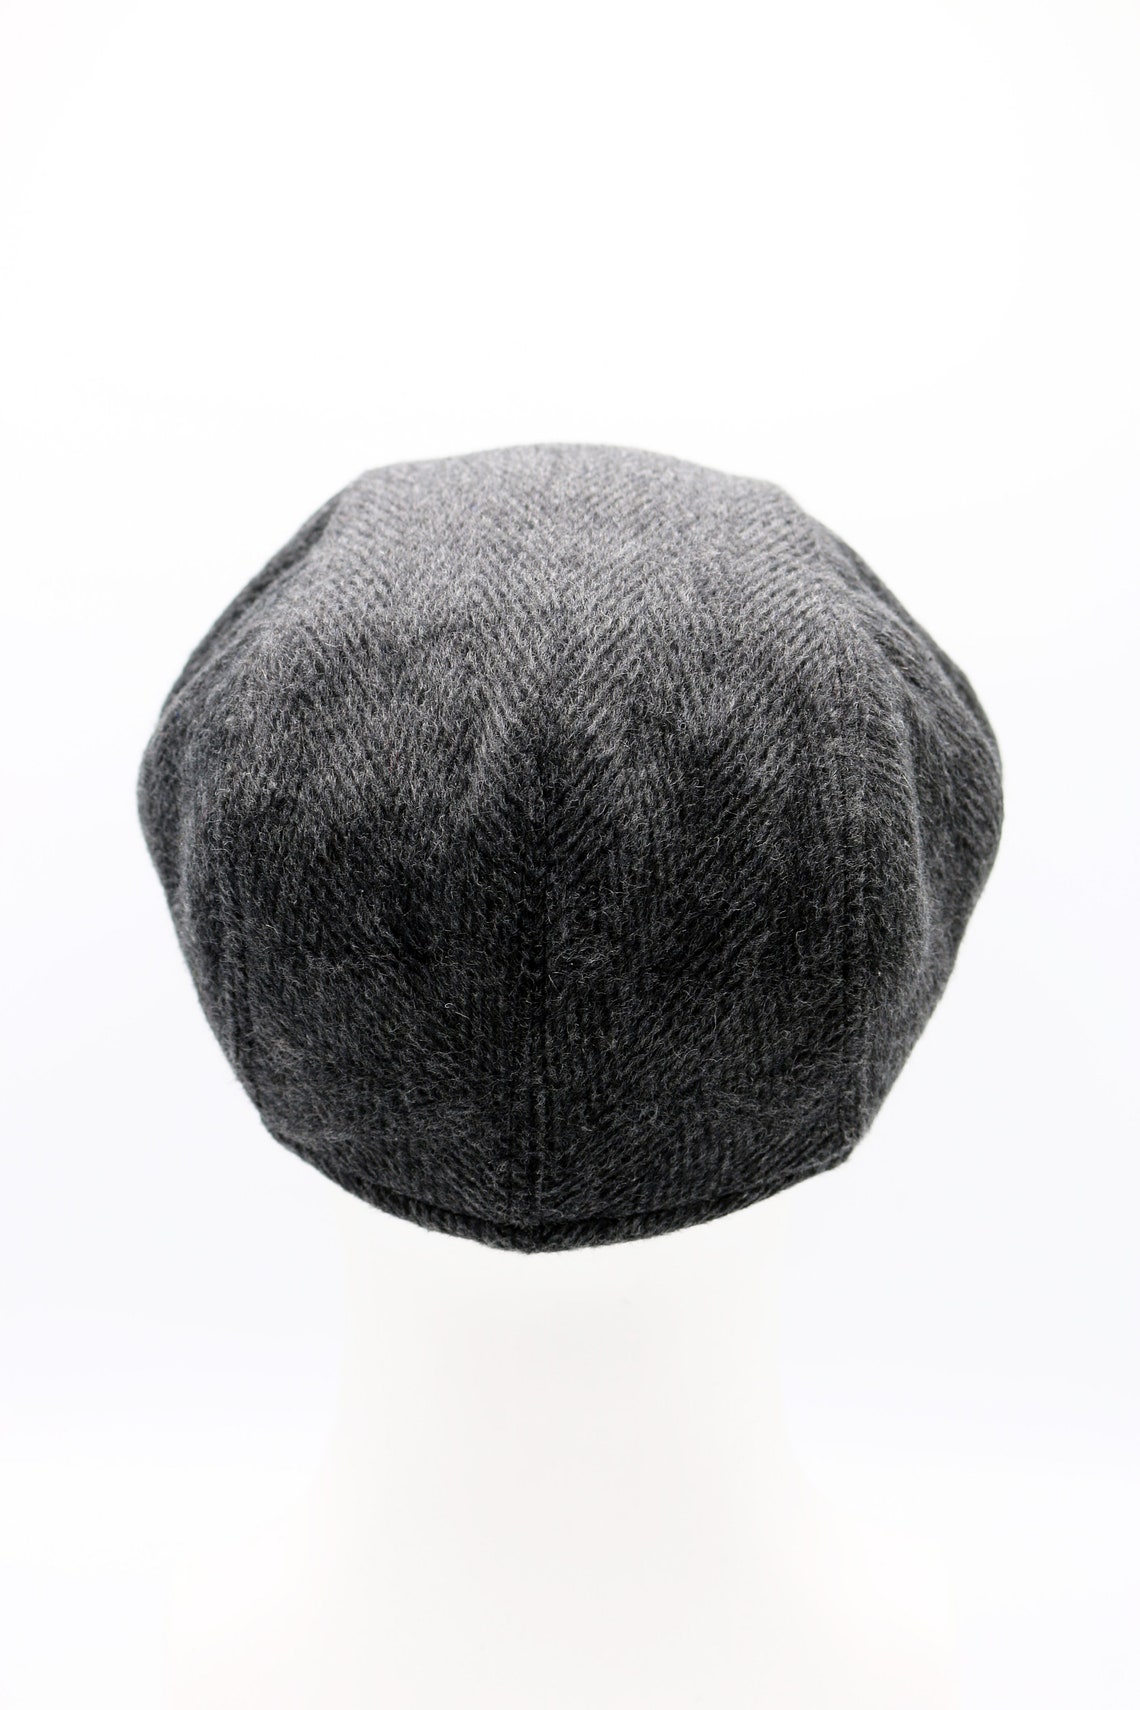 Dark Gray Wool Flat Cap Peaky Blinders Hat Baker Boy Leather | Etsy